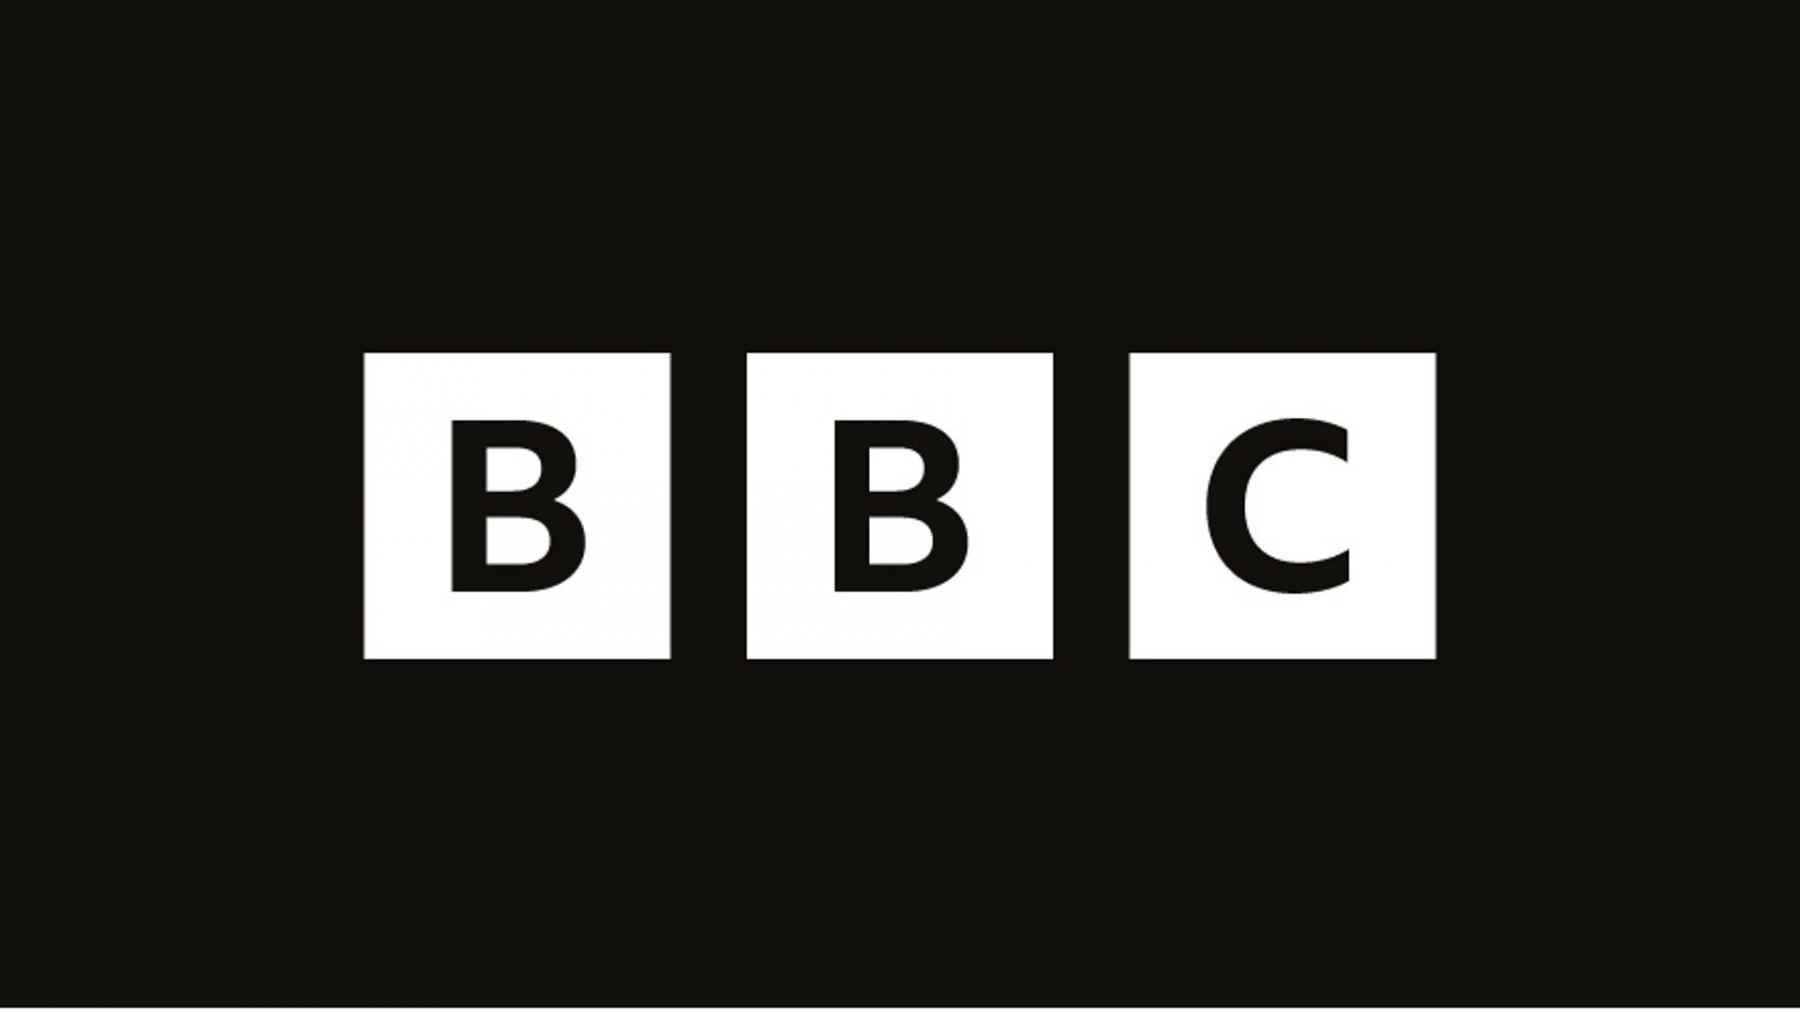 محطة BBC لم تغيّر شعارها إلى الأسود... وسائل إعلام كبرى وقعت في الفخ